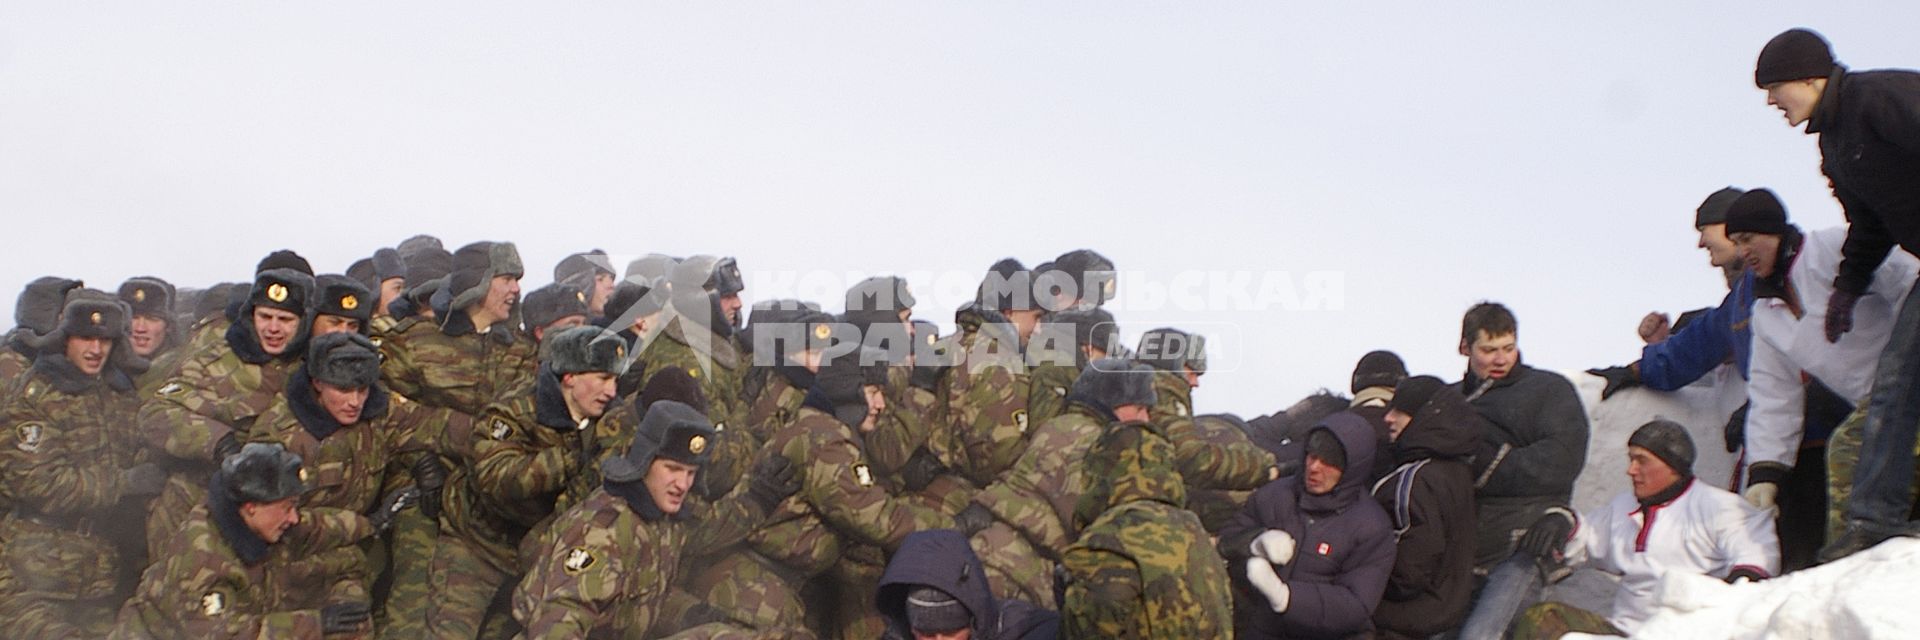 Масленица в Новосибирском военном институте. Военные штурмуют снежный городок.